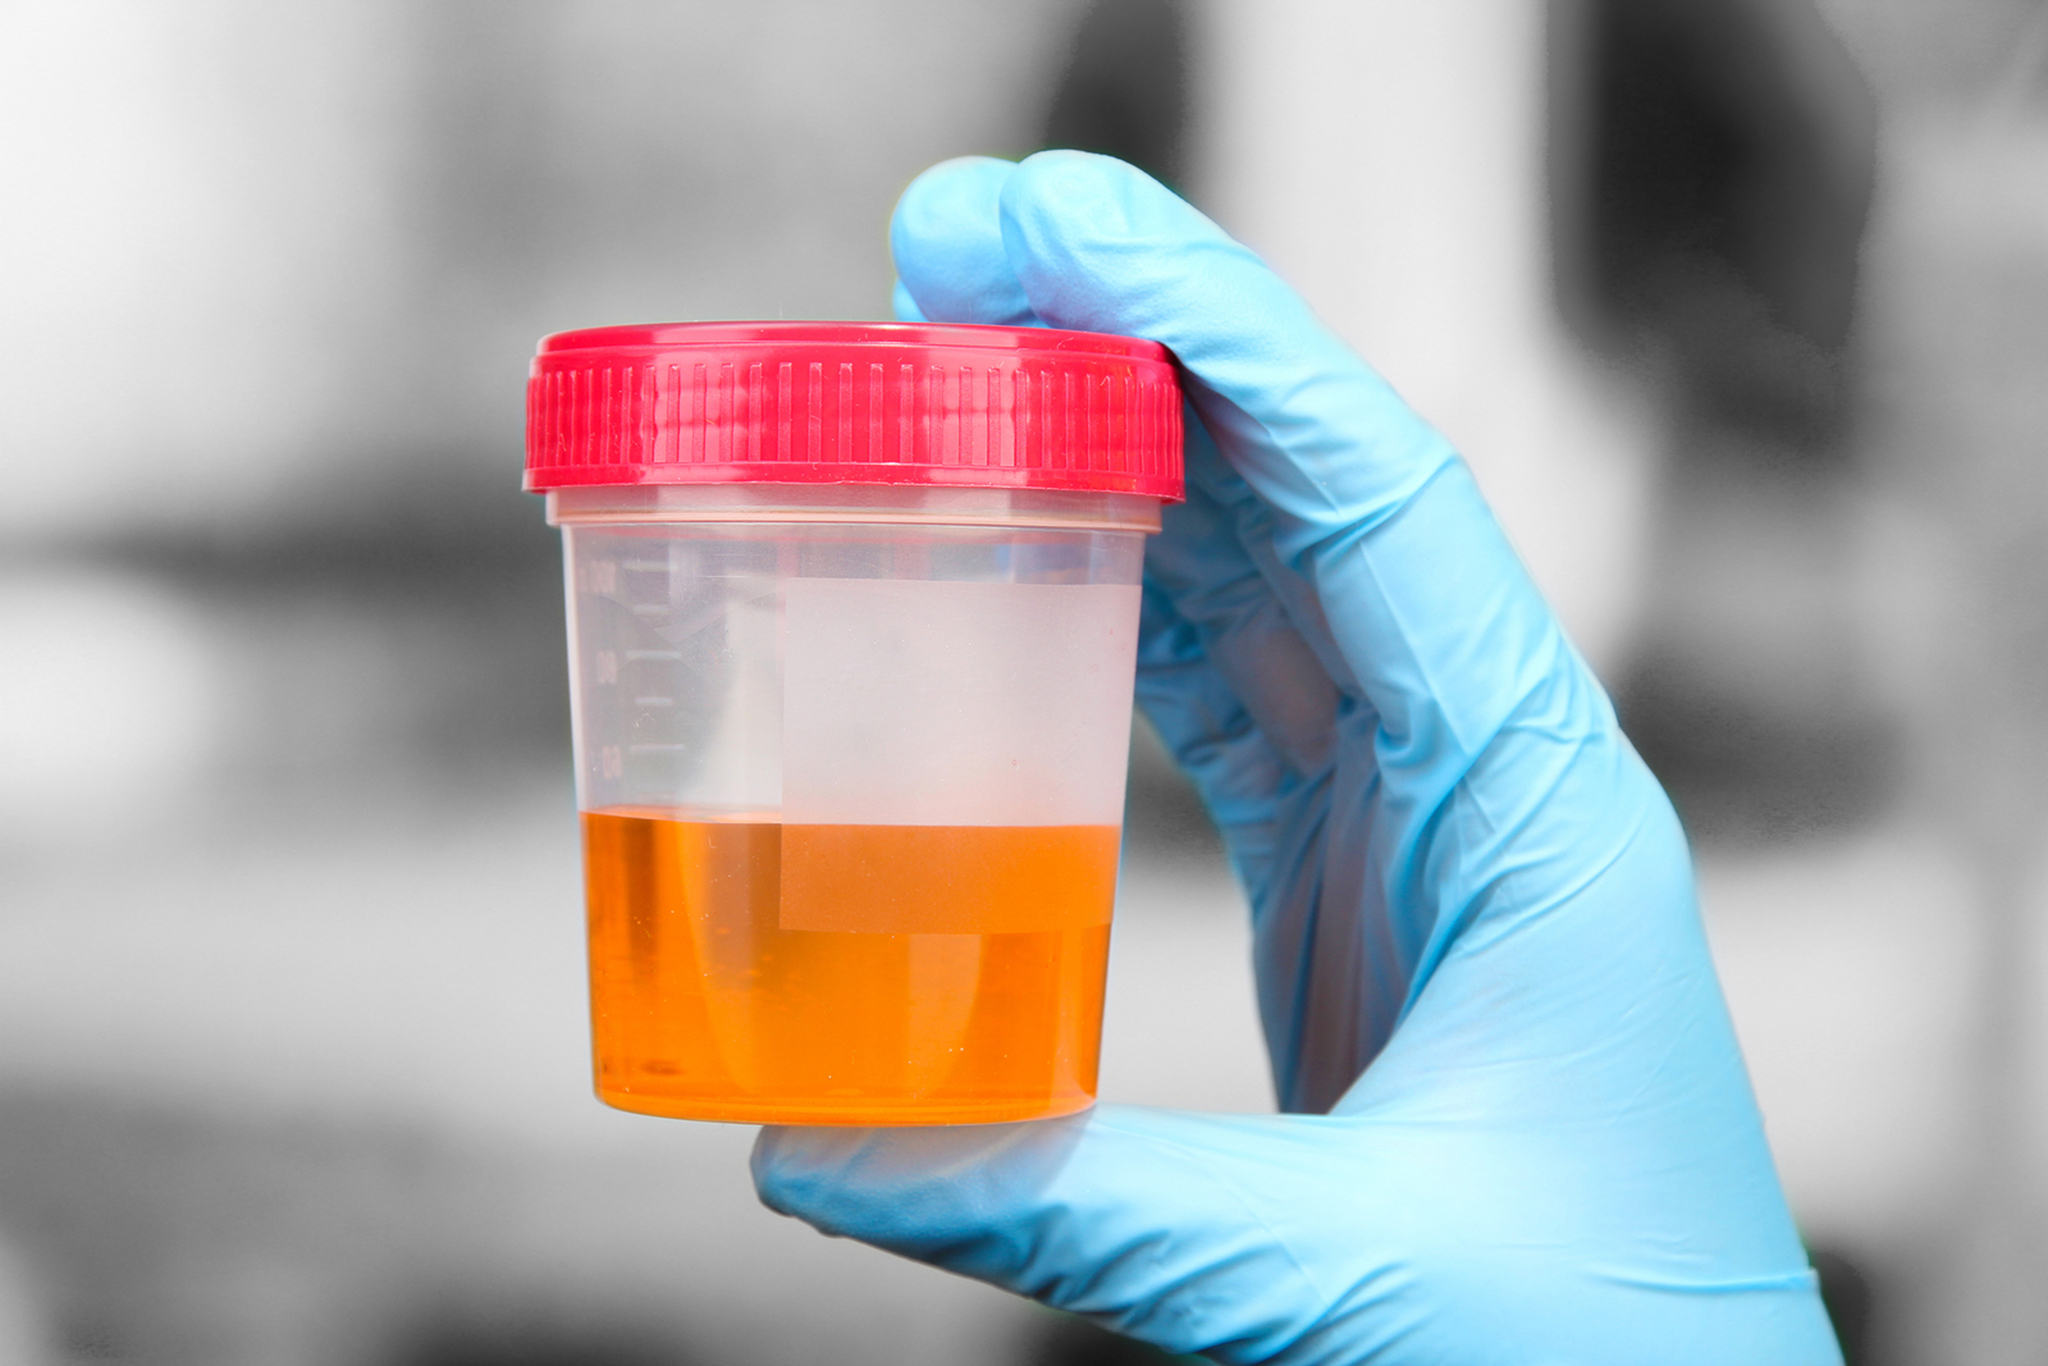 Lei da droga | Testes à urina podem constituir um “abuso”